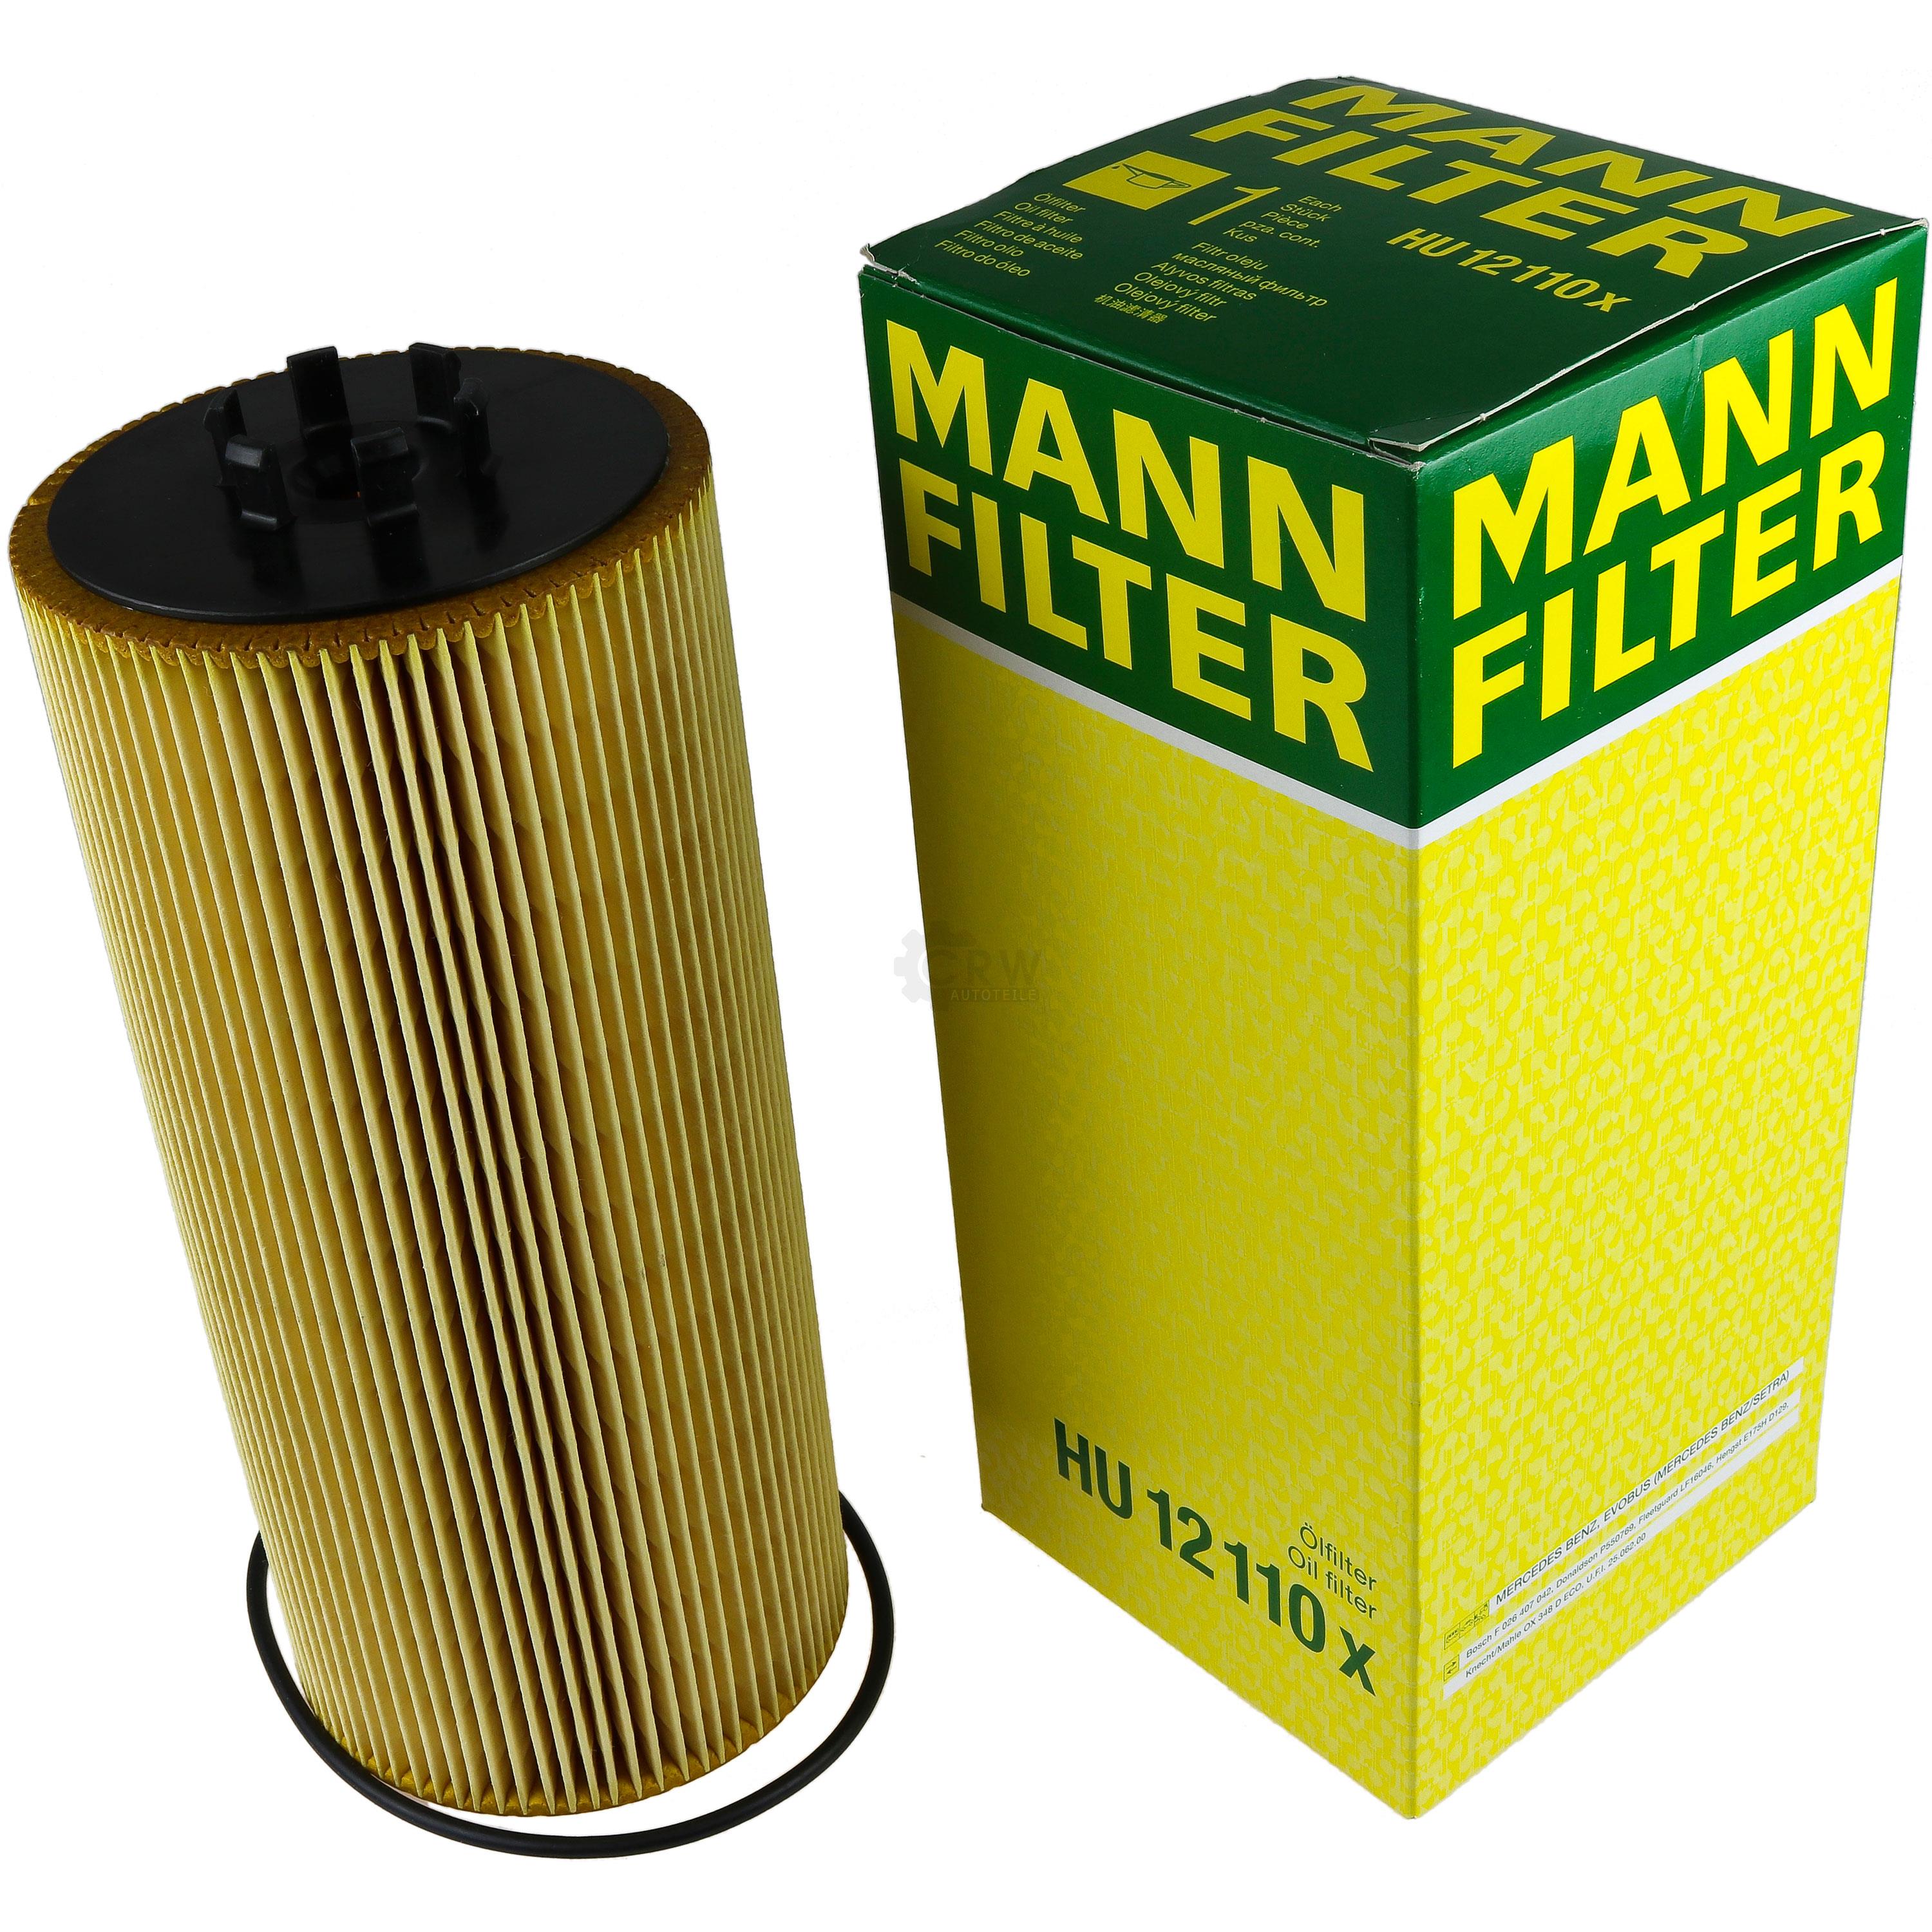 MANN-FILTER Ölfilter HU 12 110 x